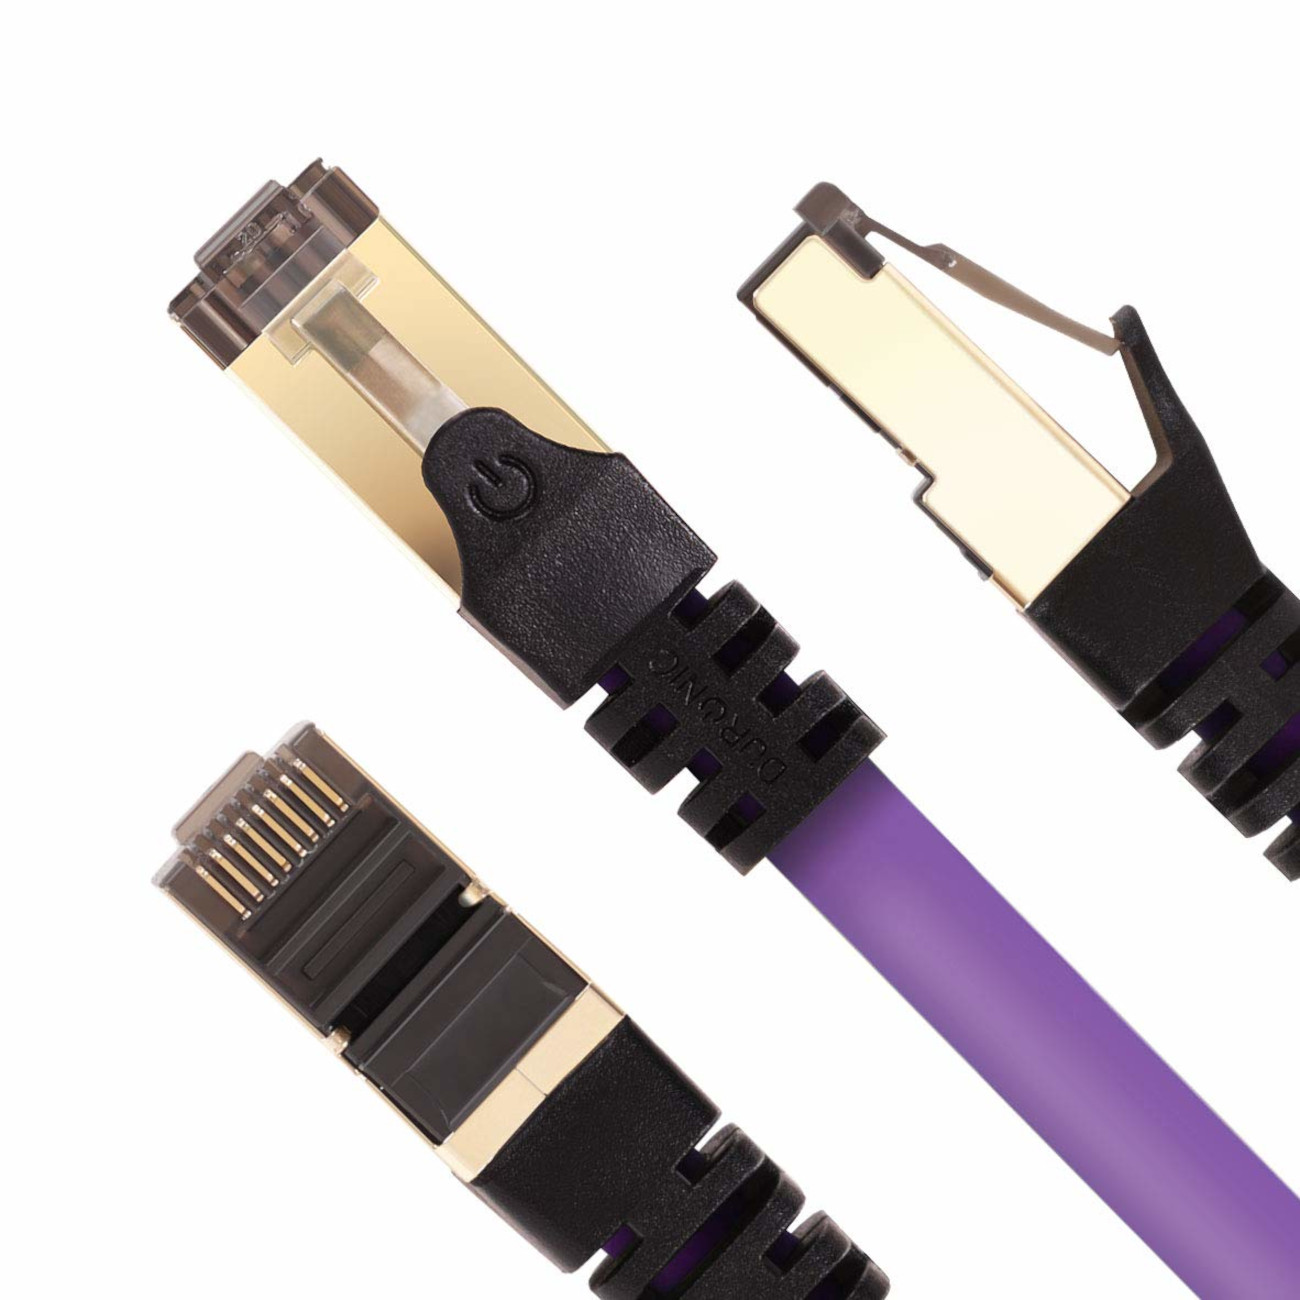 DURONIC CAT8 PE | Lankabel MB/s 10m für Netzwerkkabel, Router | Ethernetkabel RJ45 10 und Patchkabel | 5.000 Konsole, m